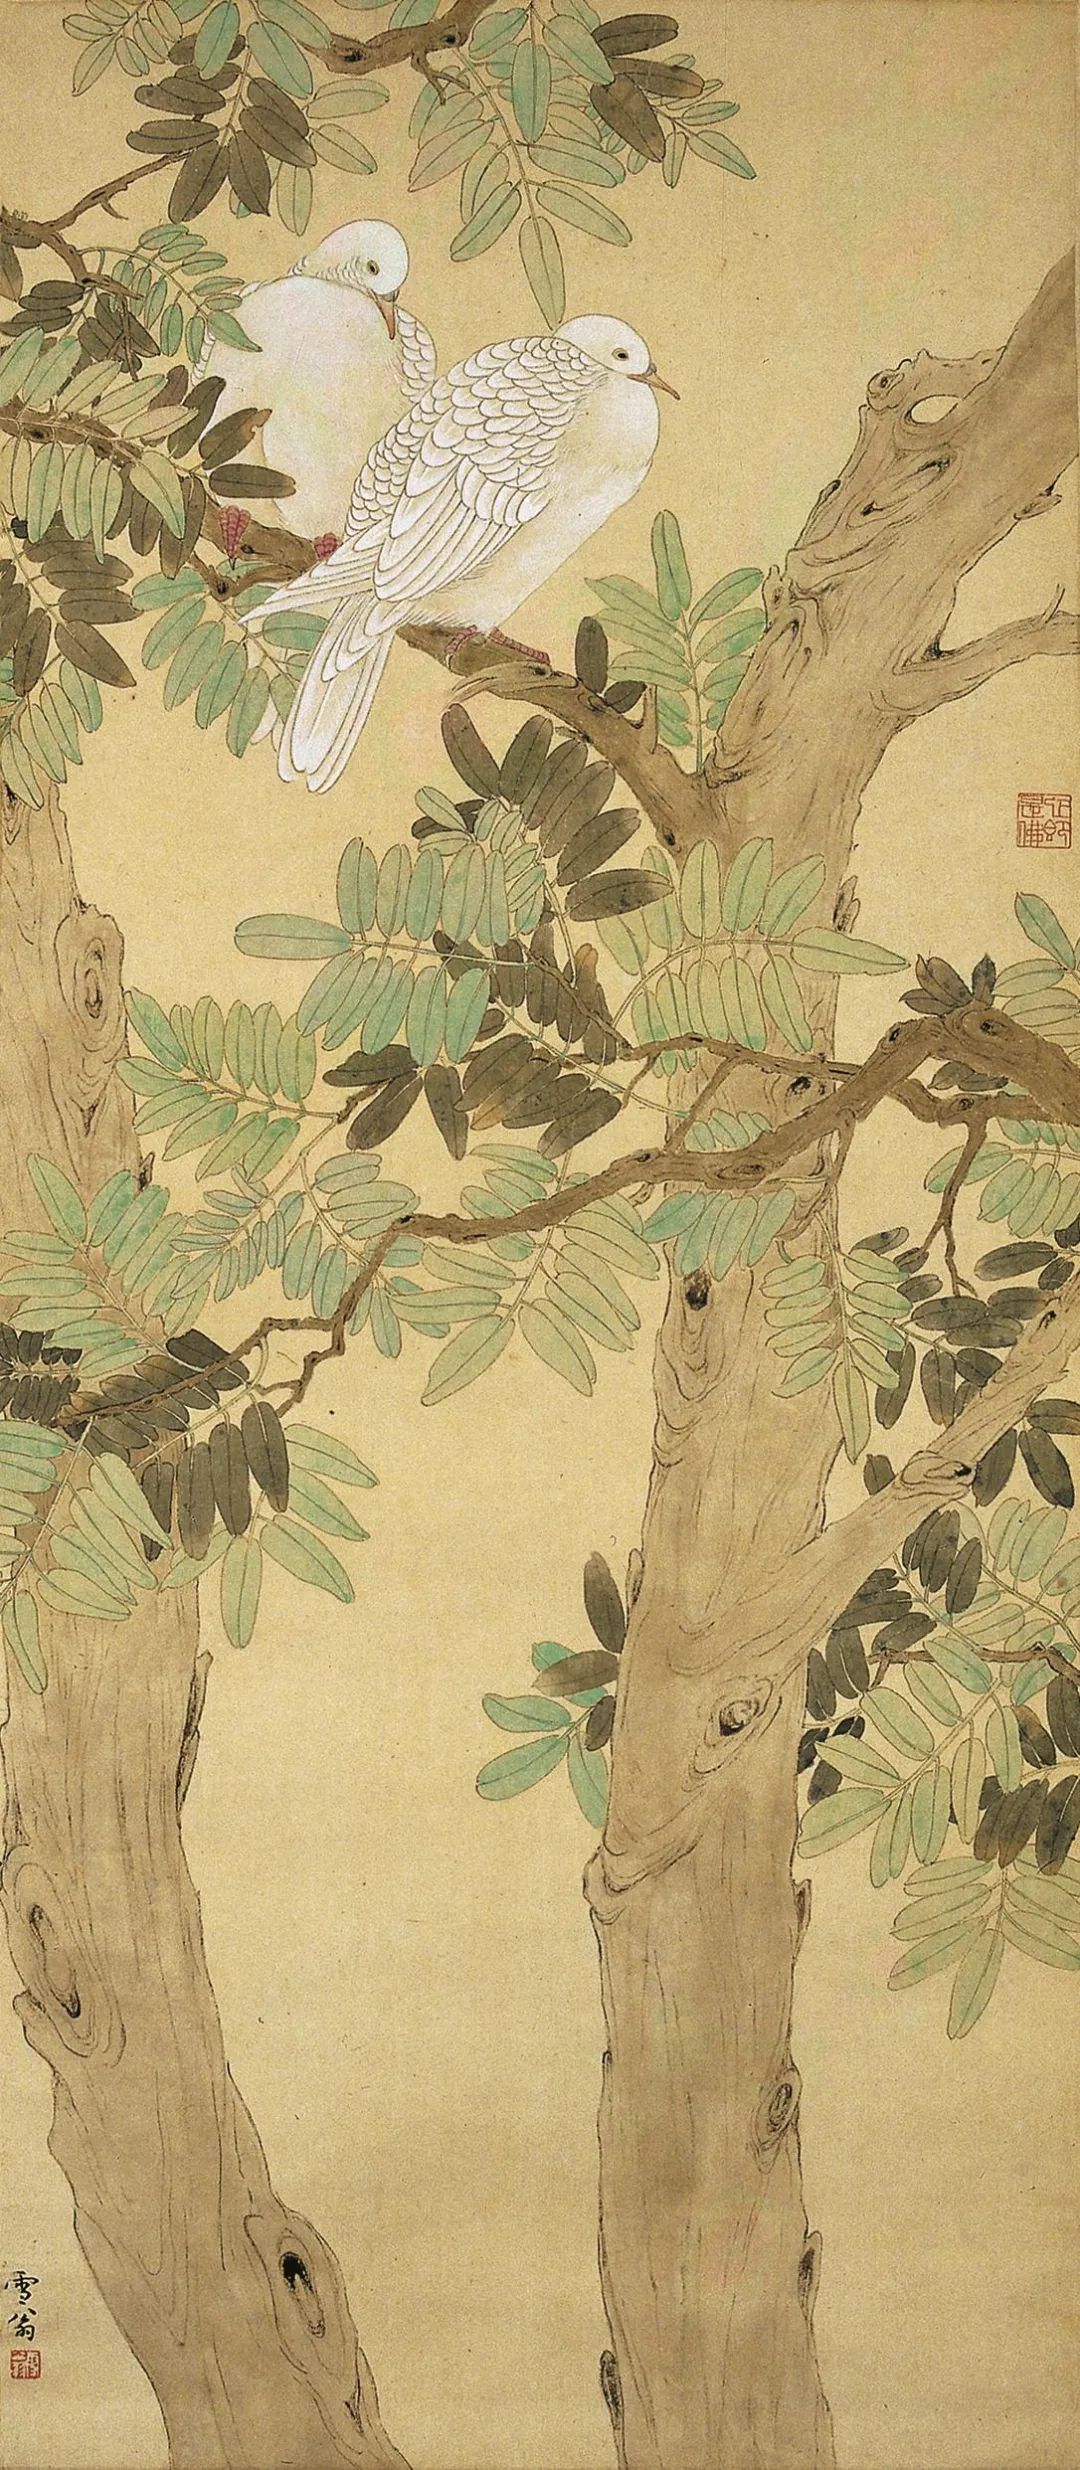 《槐荫双鸠》 陈之佛 中国画 93.5×40.5cm 1952年 南京博物院藏